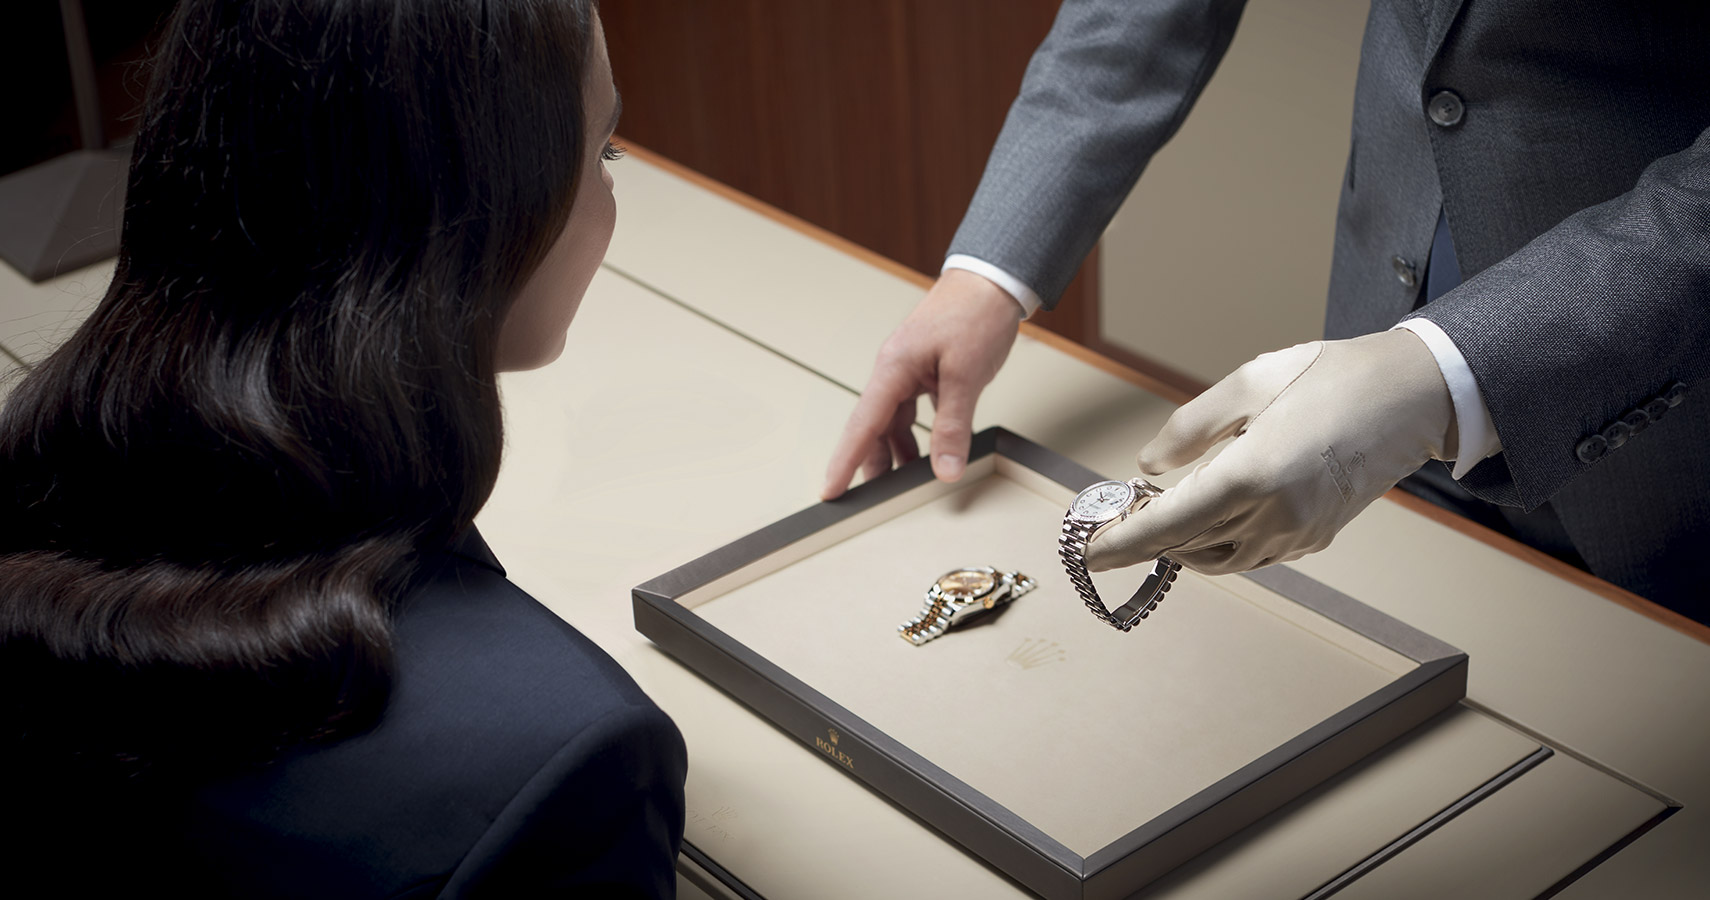 A Rolex watch being presented